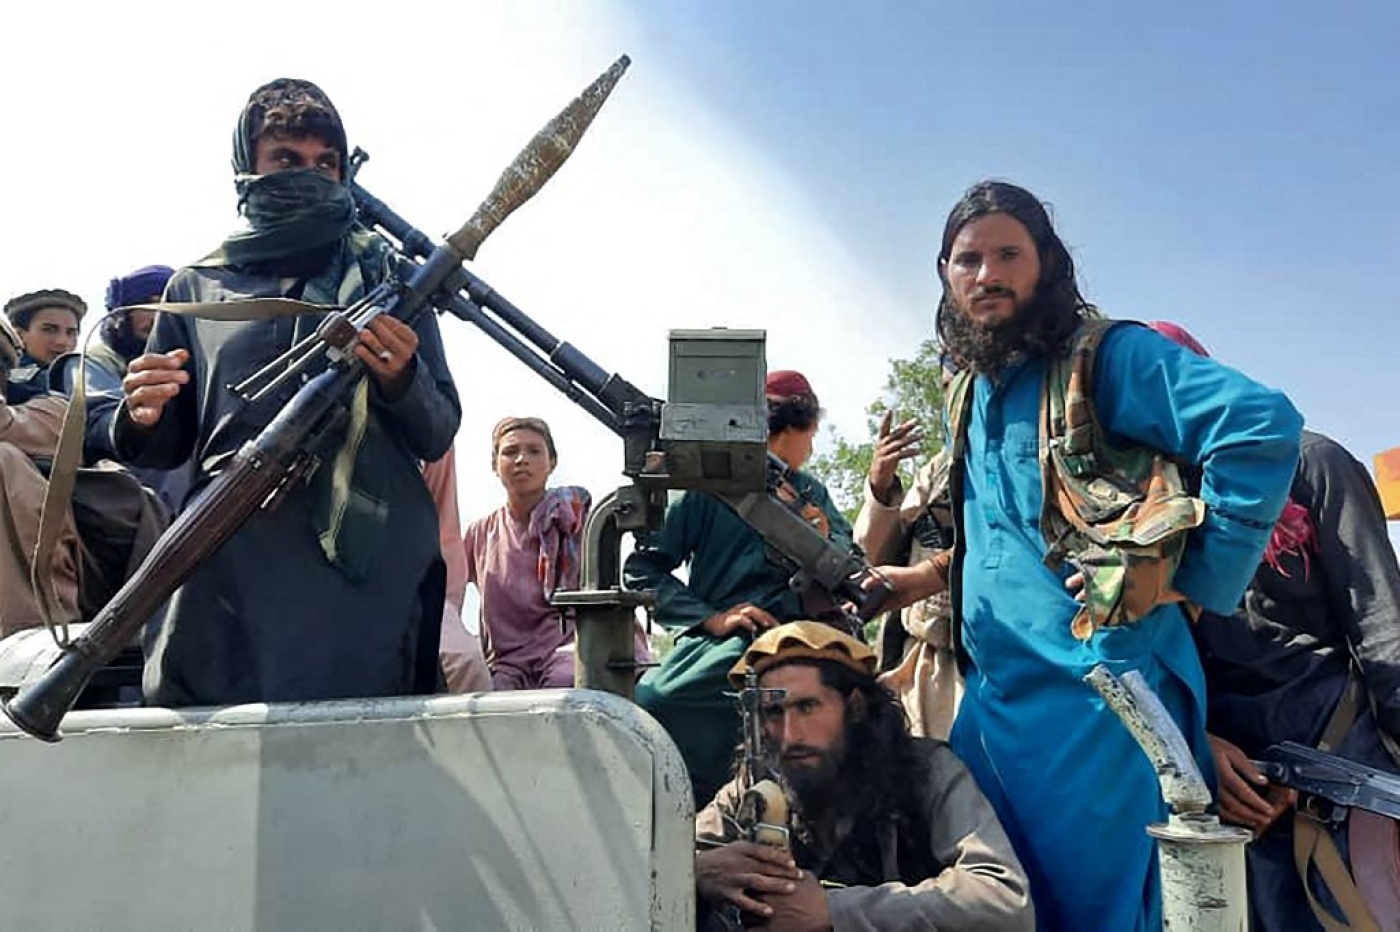 Des combattants talibans dans la province afghane de Laghman, le 15 août 2021 (AFP)